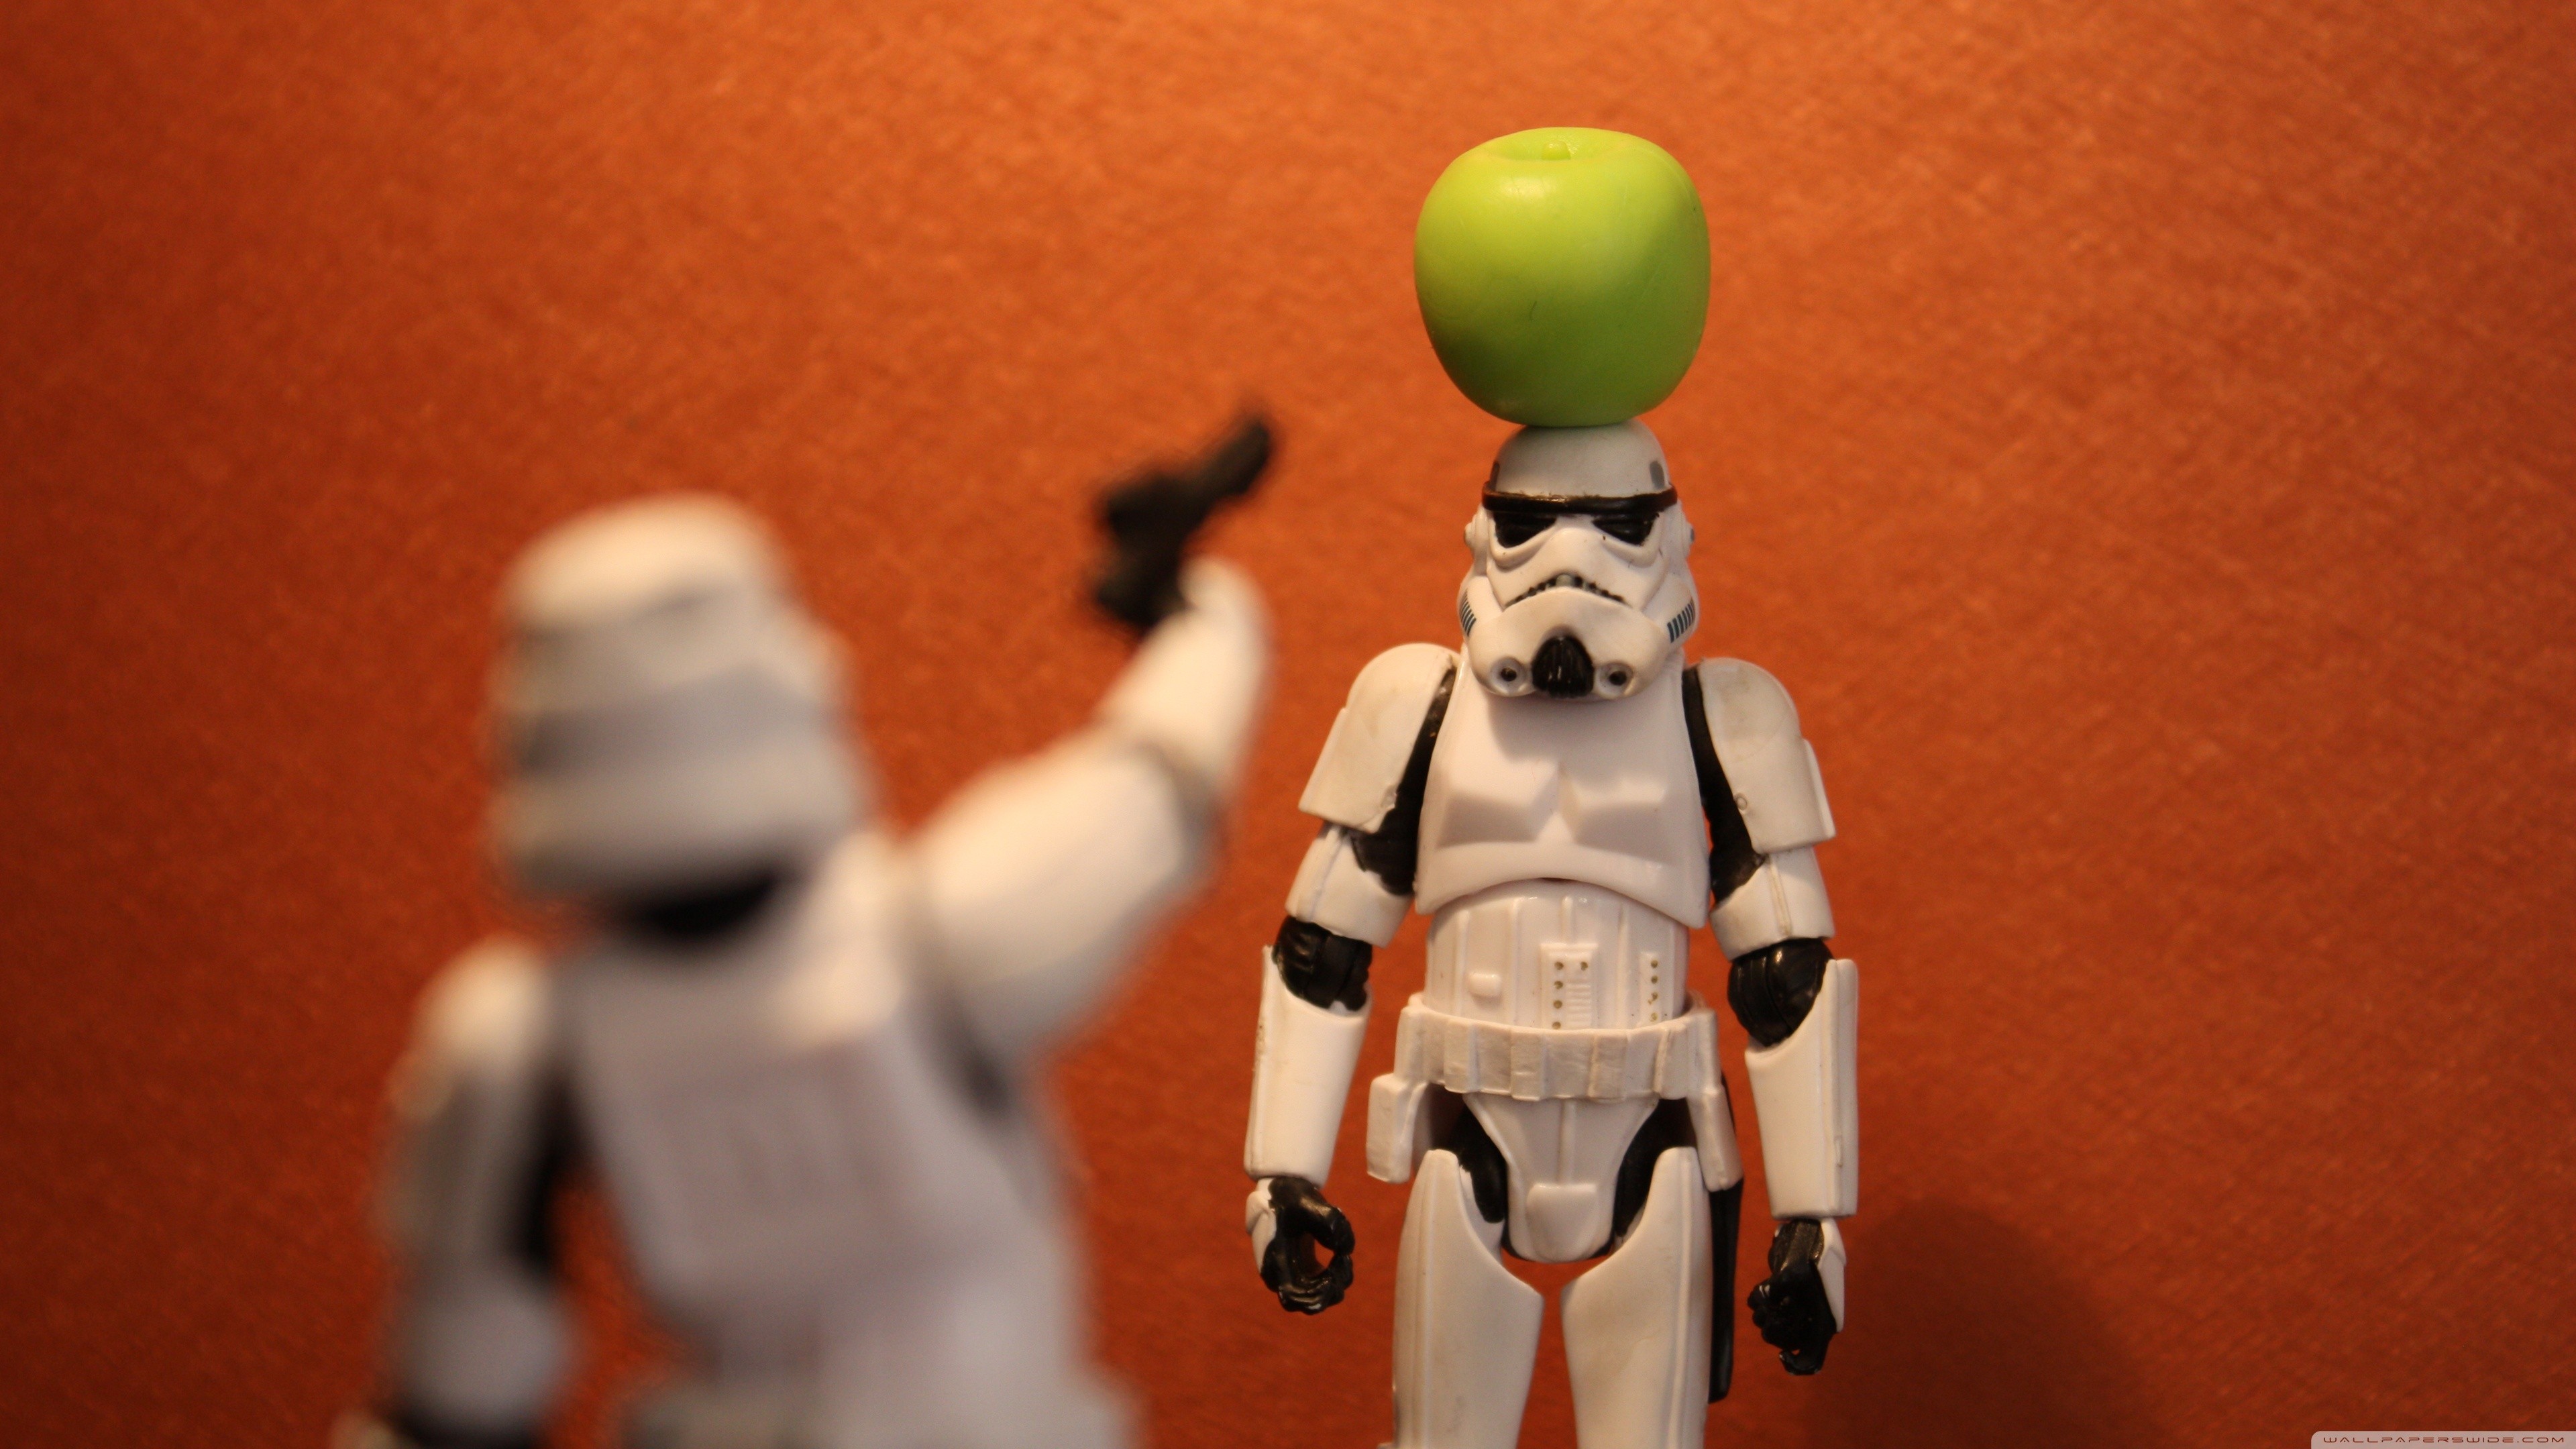 Star Wars, stormtroopers, funny - desktop wallpaper